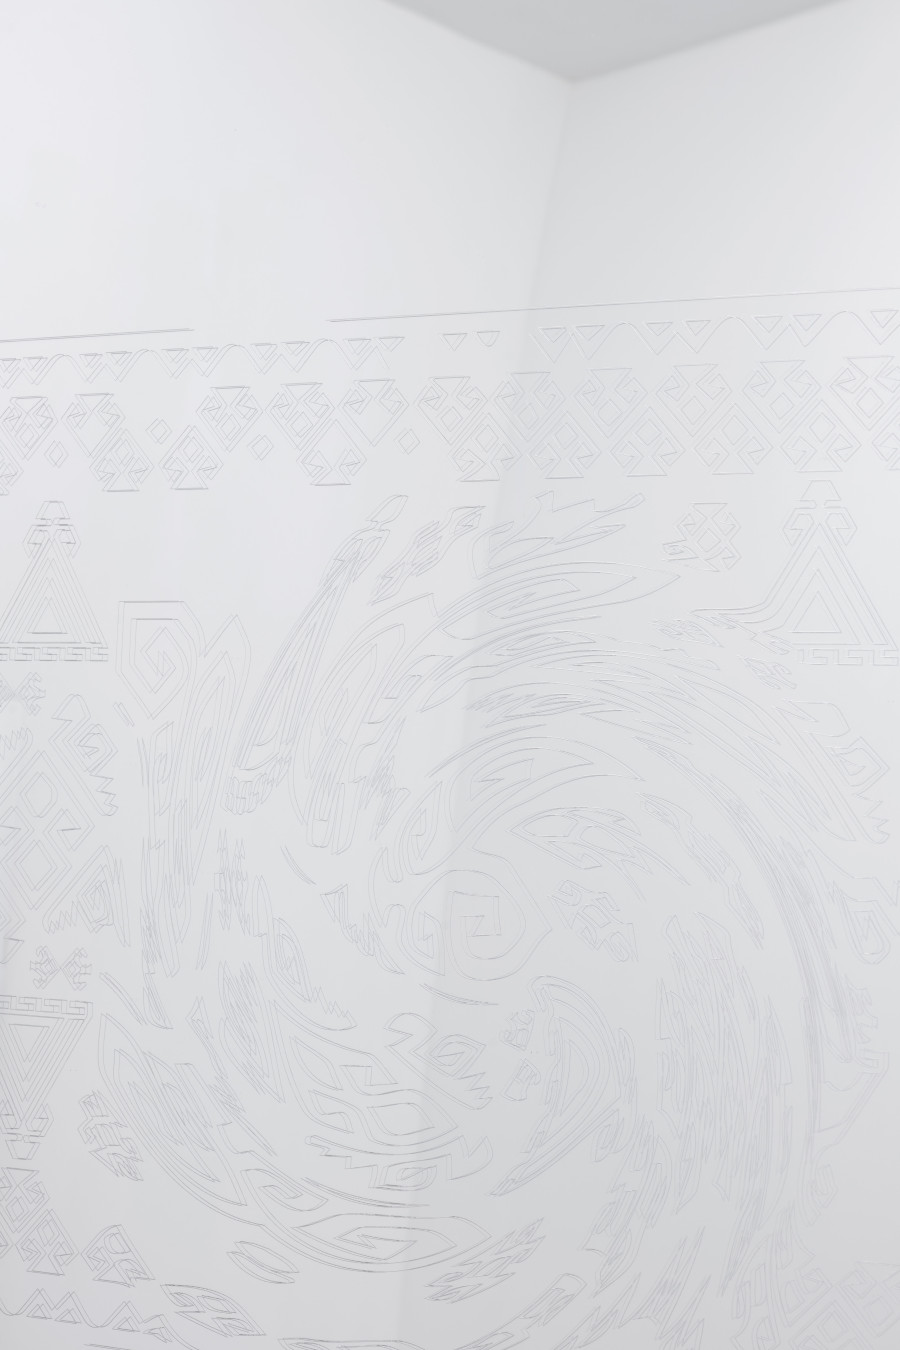 Detail, Untitled, 2022, Plexiglass, 179 x 85 x 17 cm